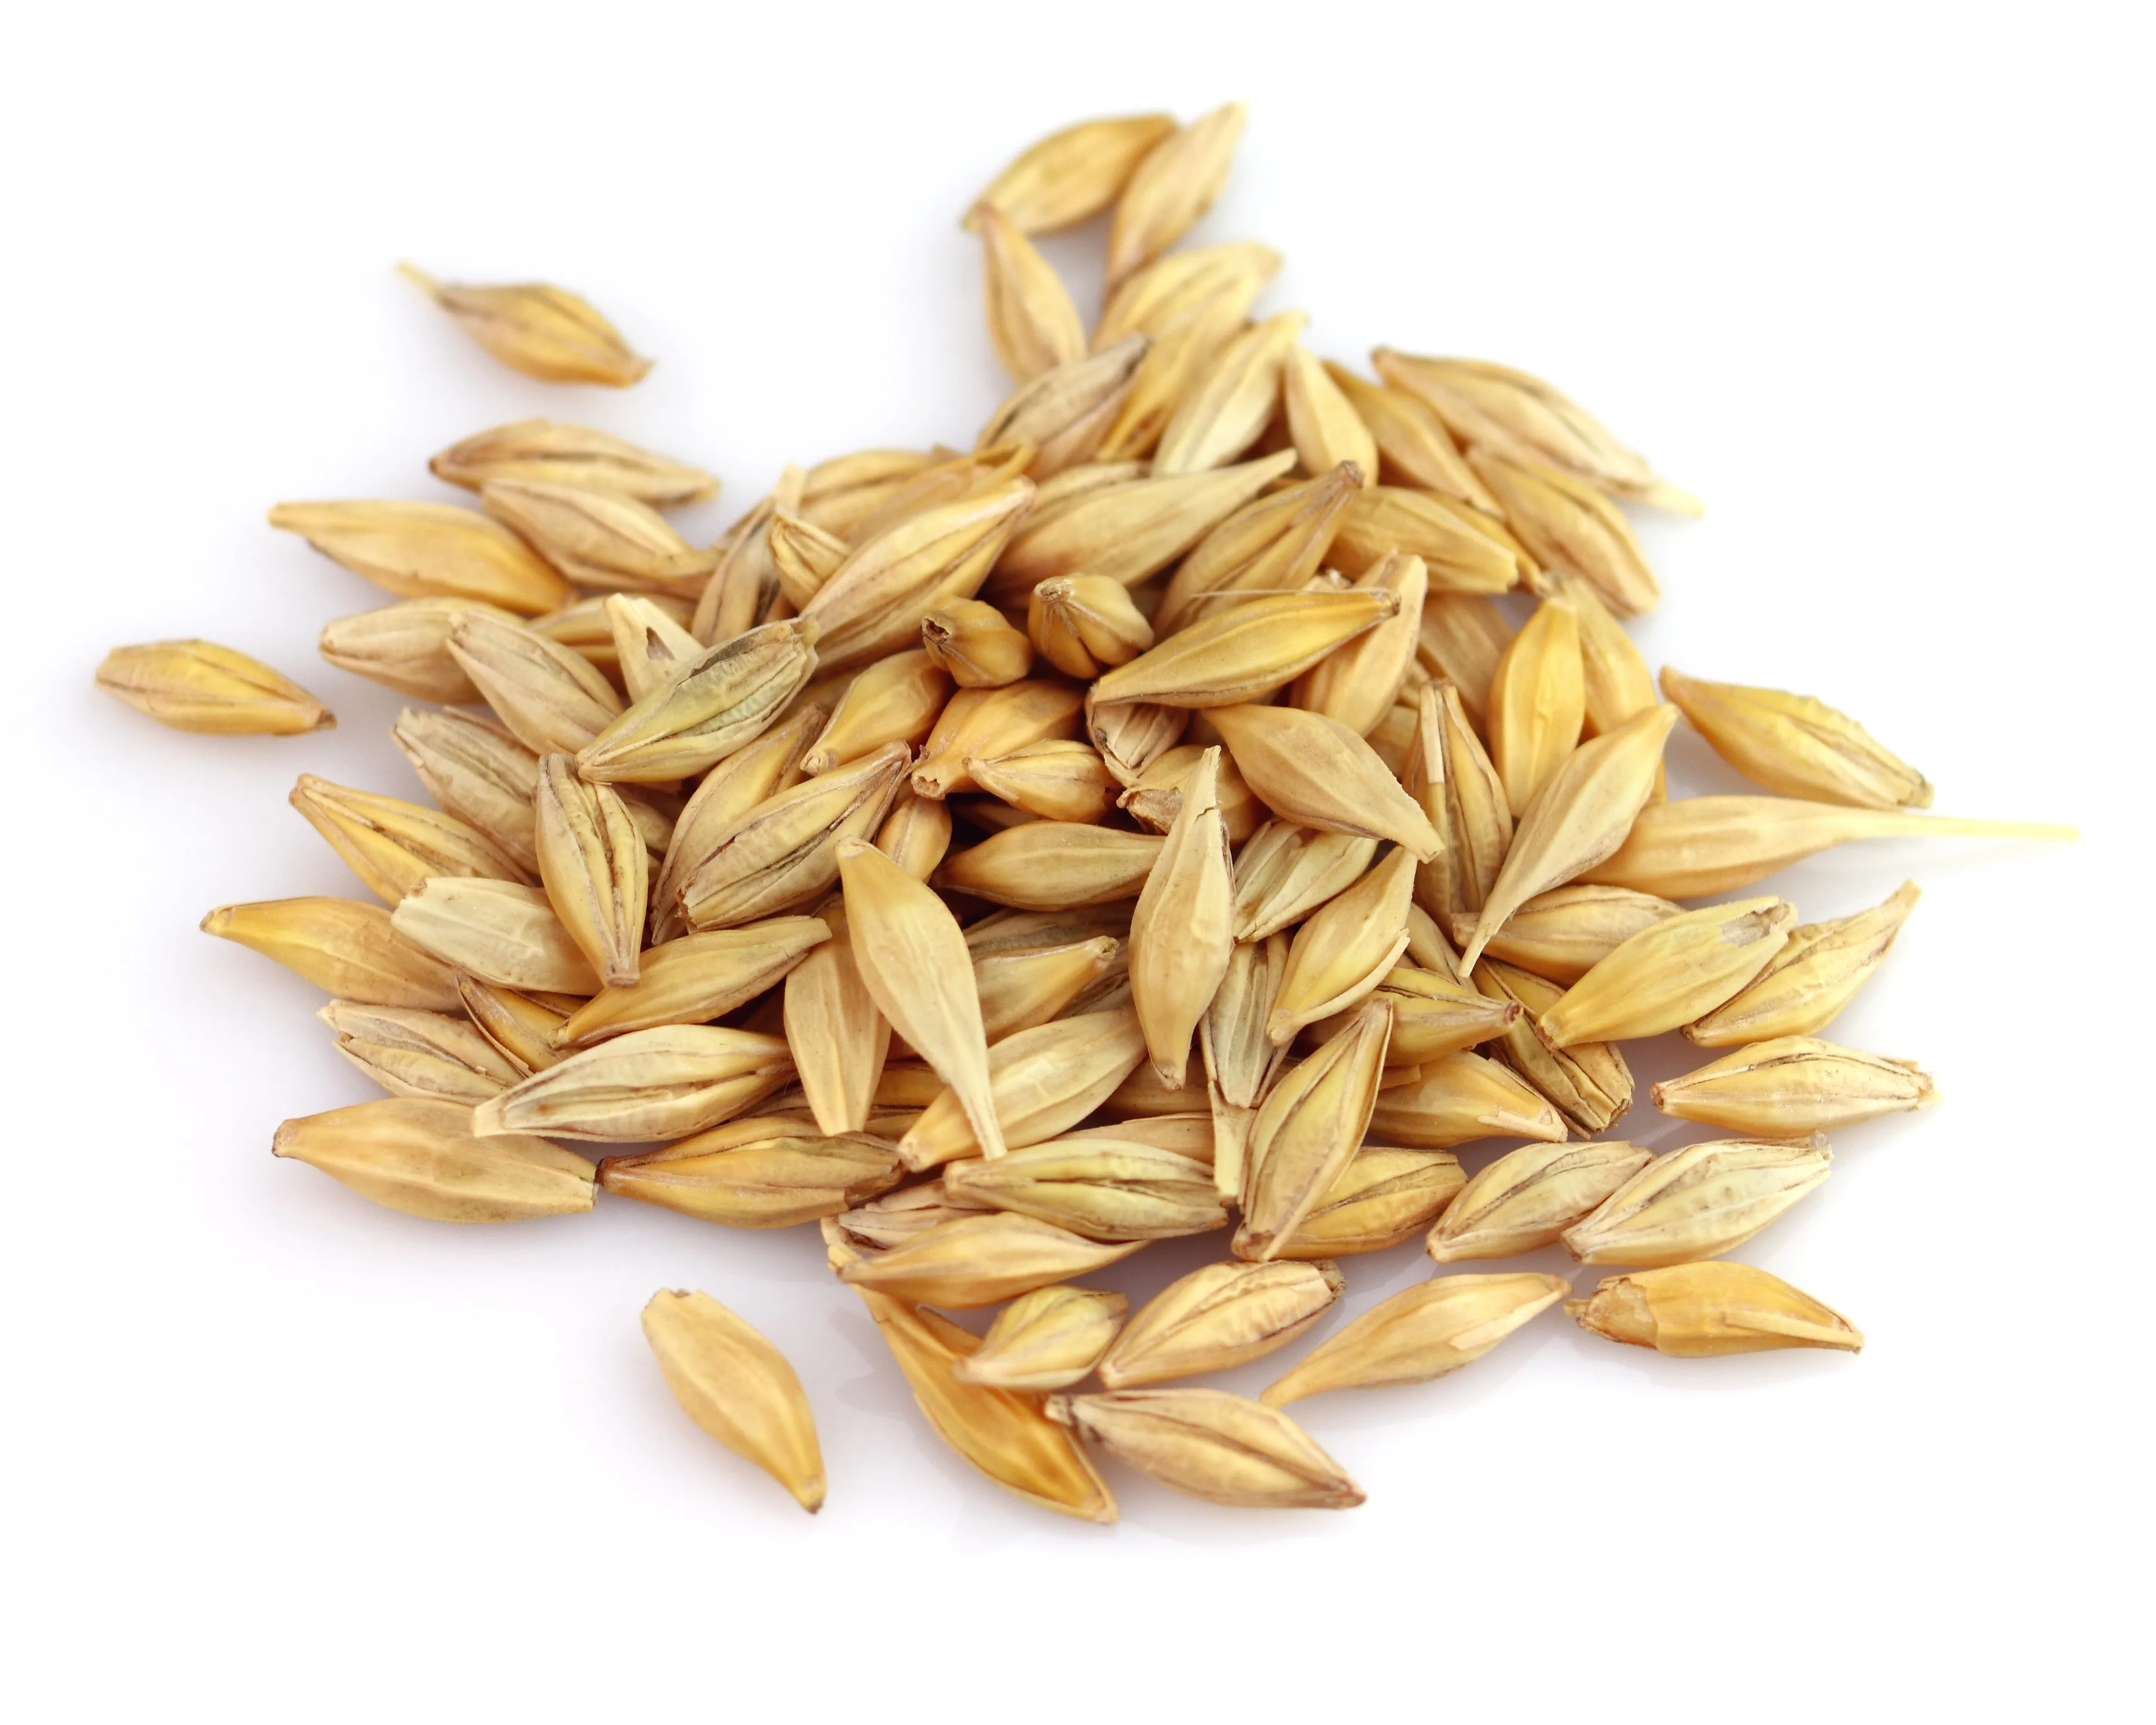 Пшеница зерно